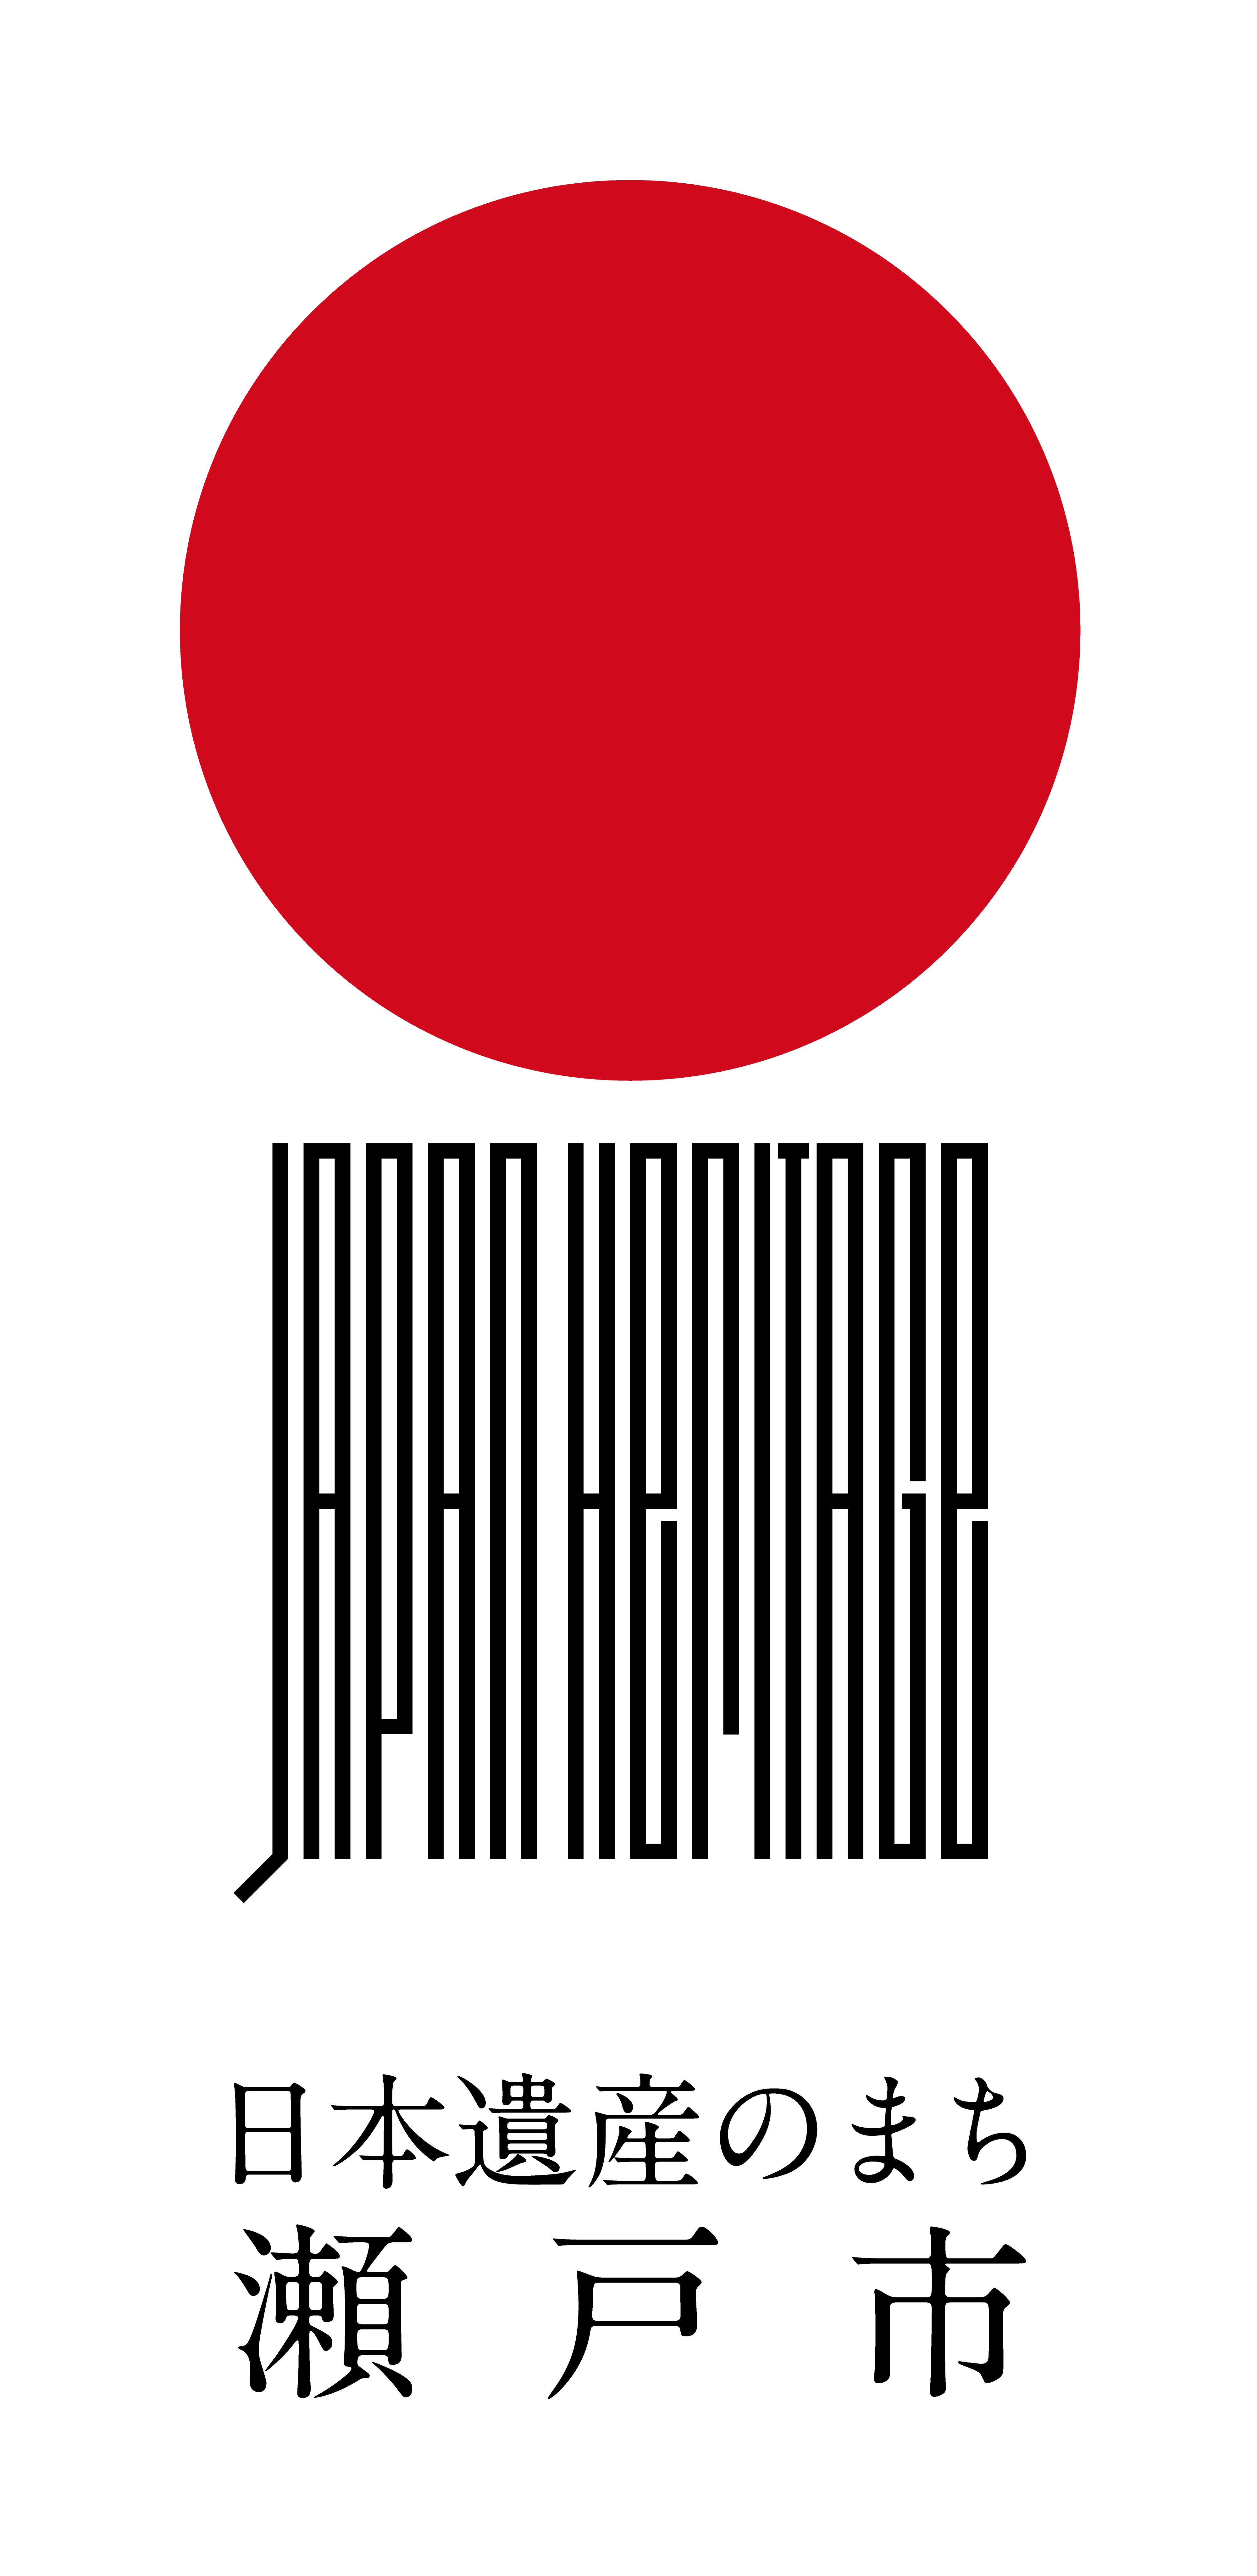 「日本遺産のまち瀬戸市」のロゴ